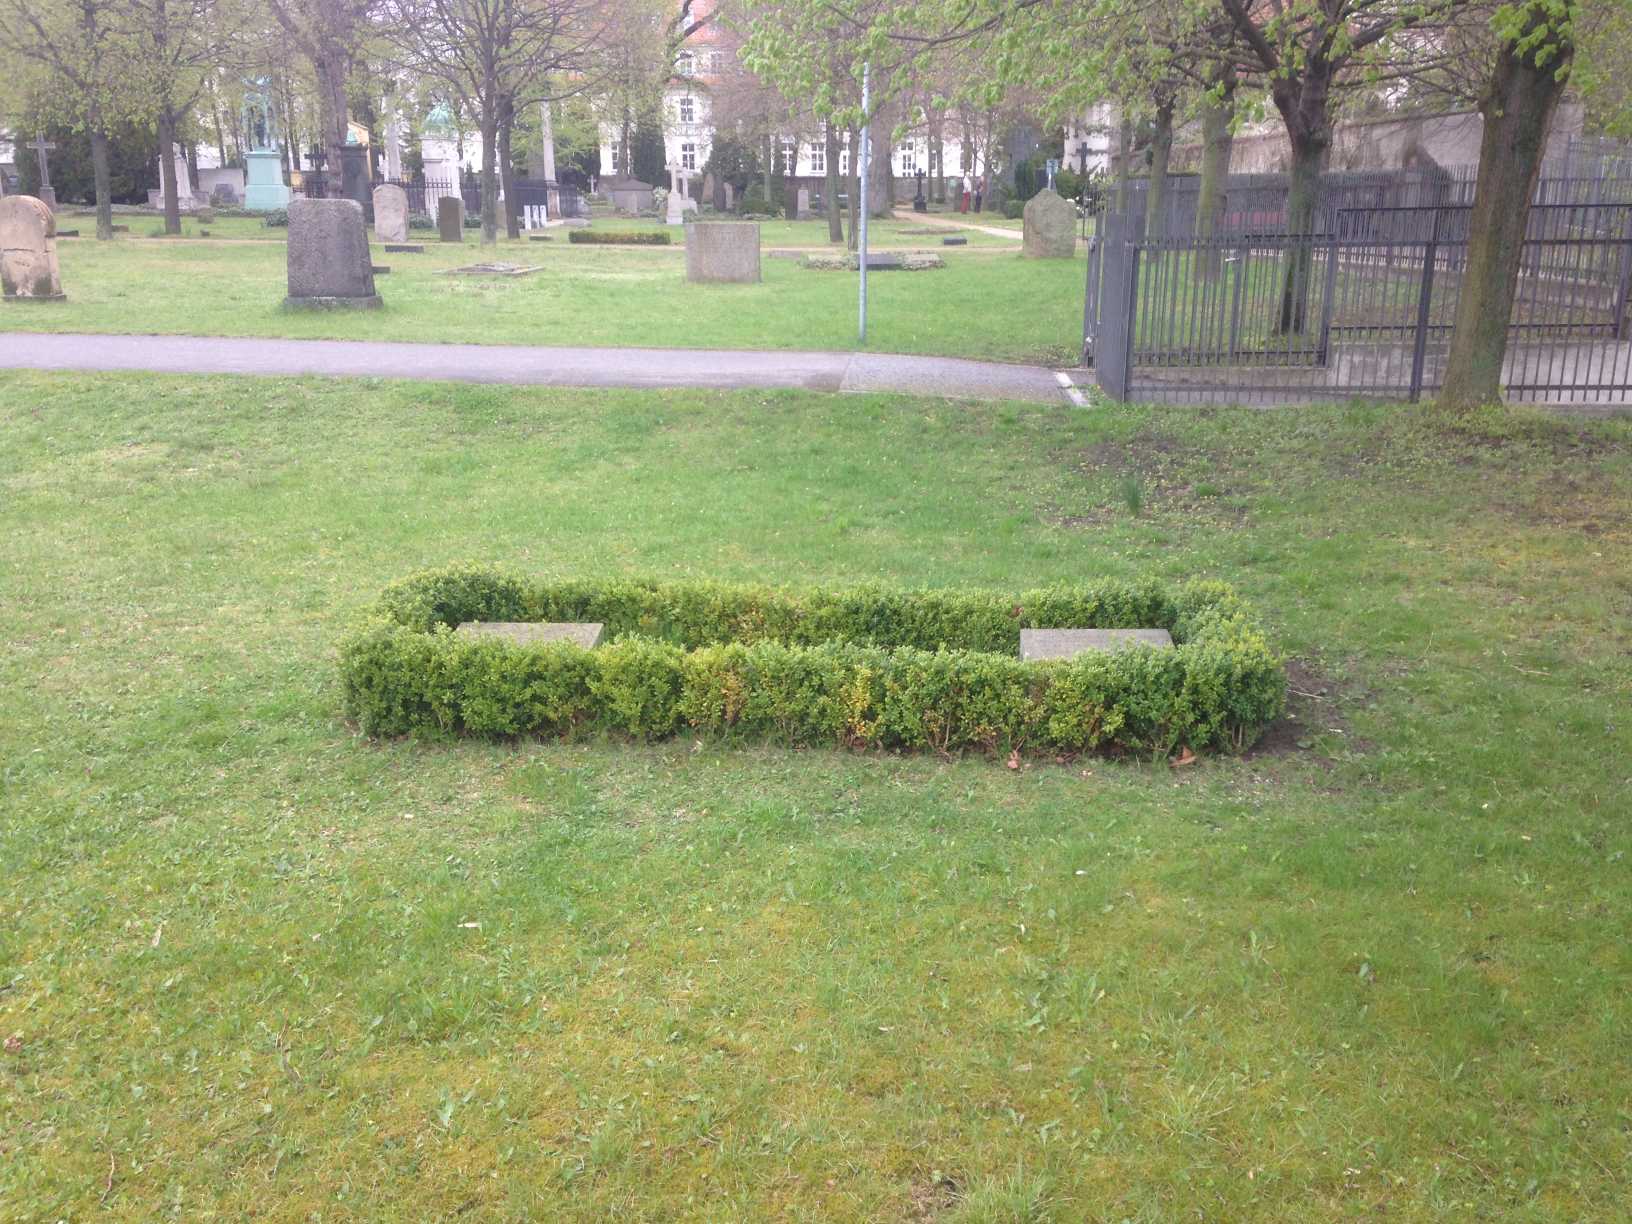 Restitutionsgrabstein Henning Christian von Arnim, Invalidenfriedhof Berlin